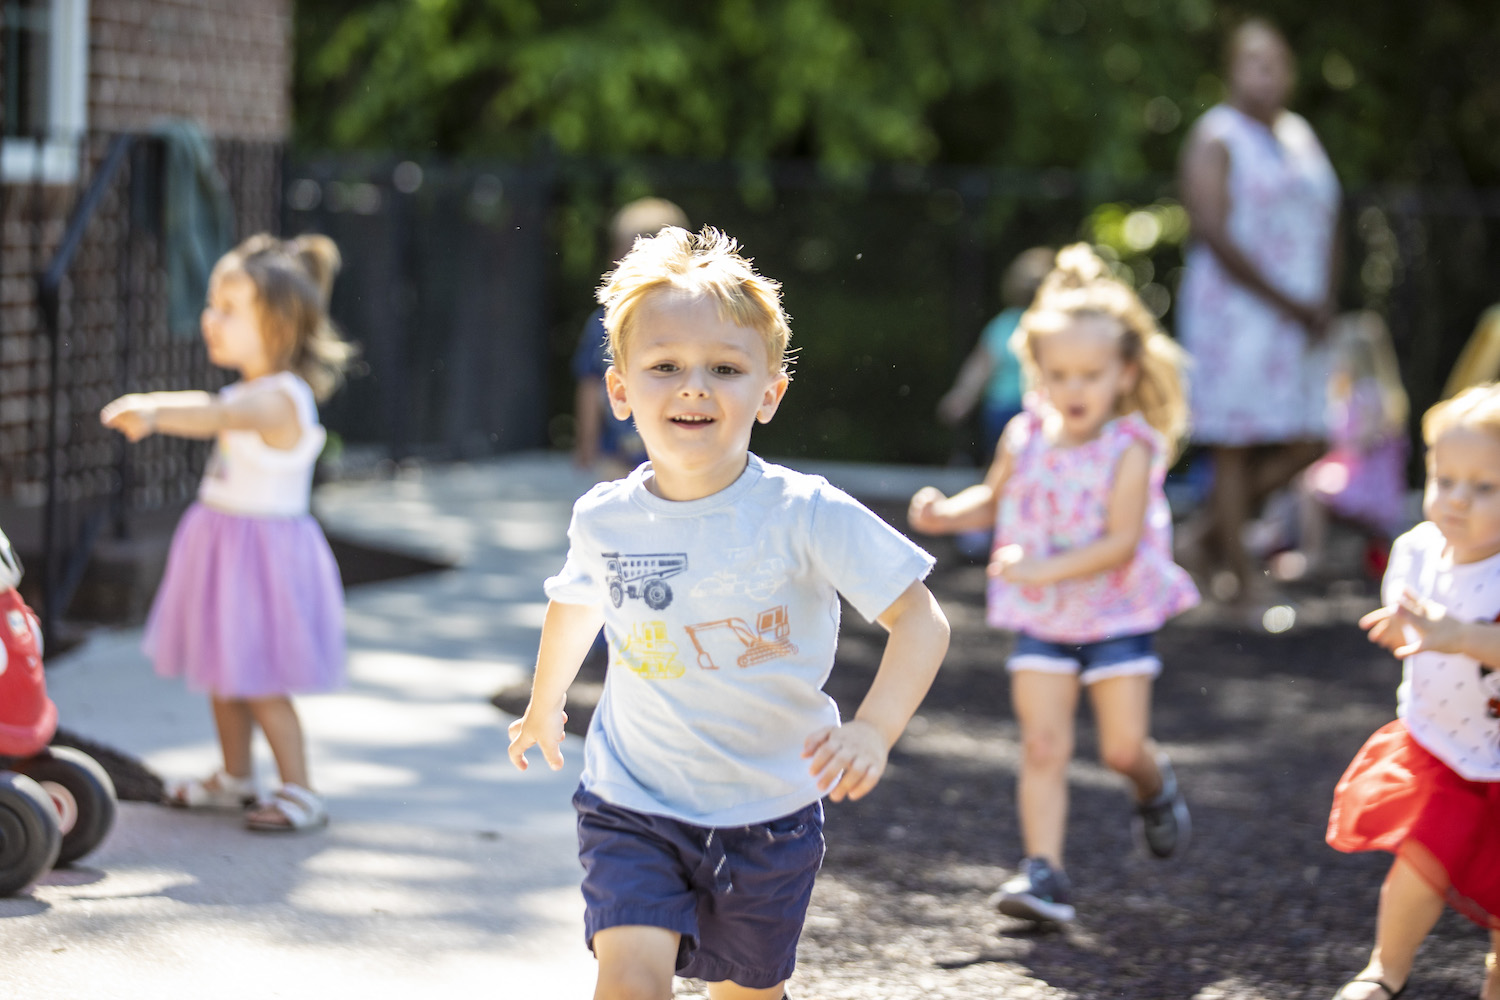 Boy running with other children in background